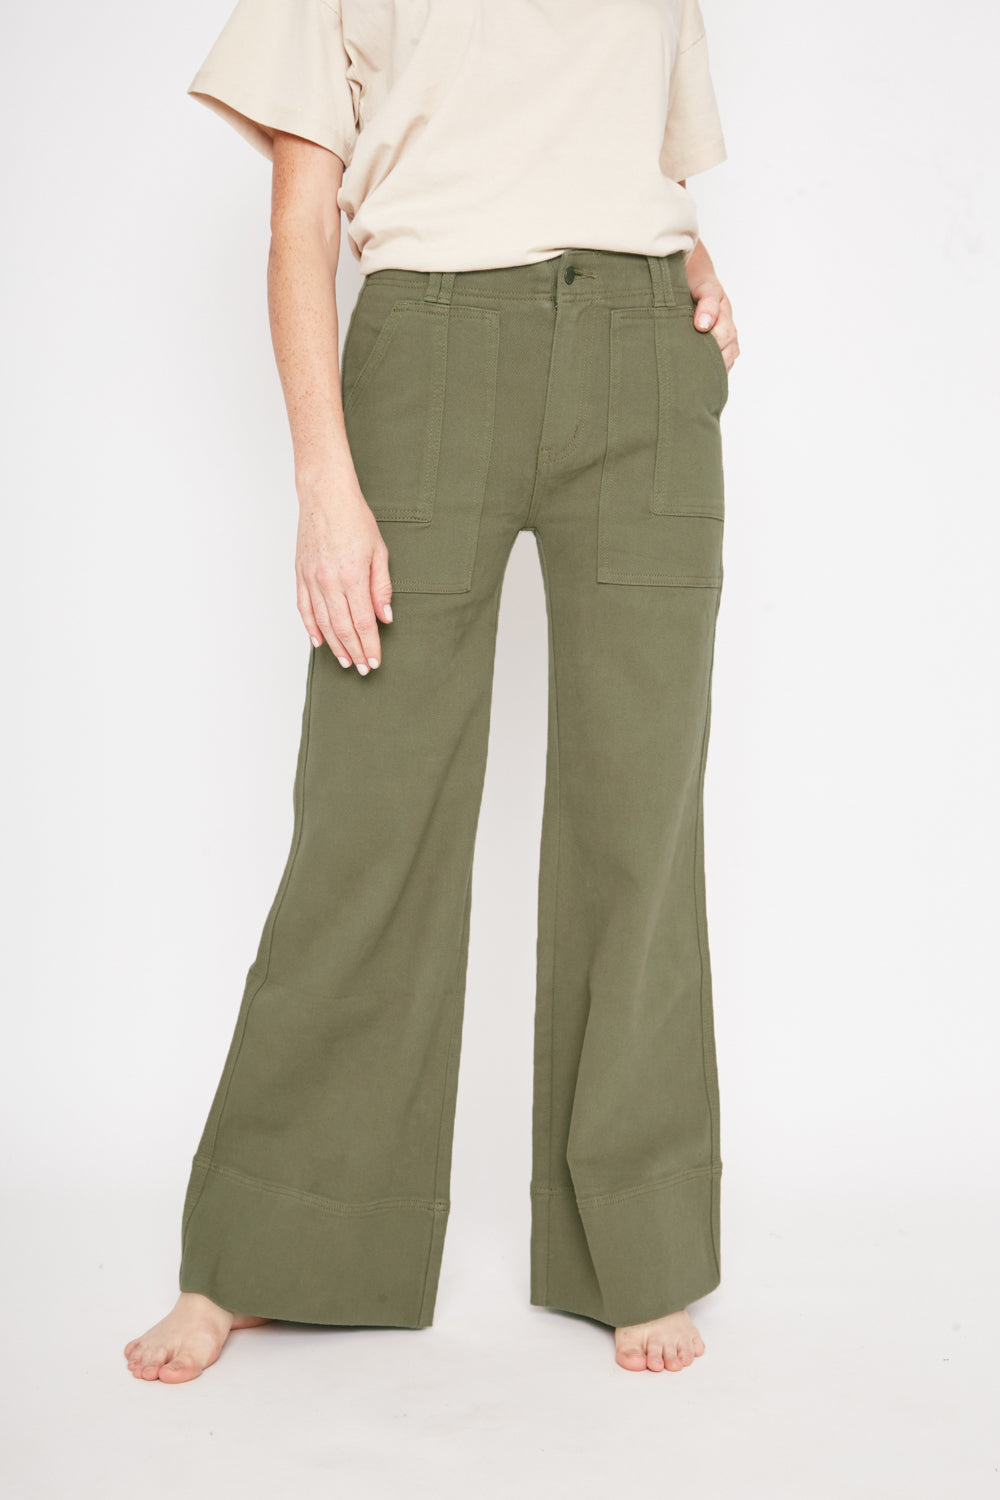 Pantalón Tamarugo Orgánico Verde Mujer